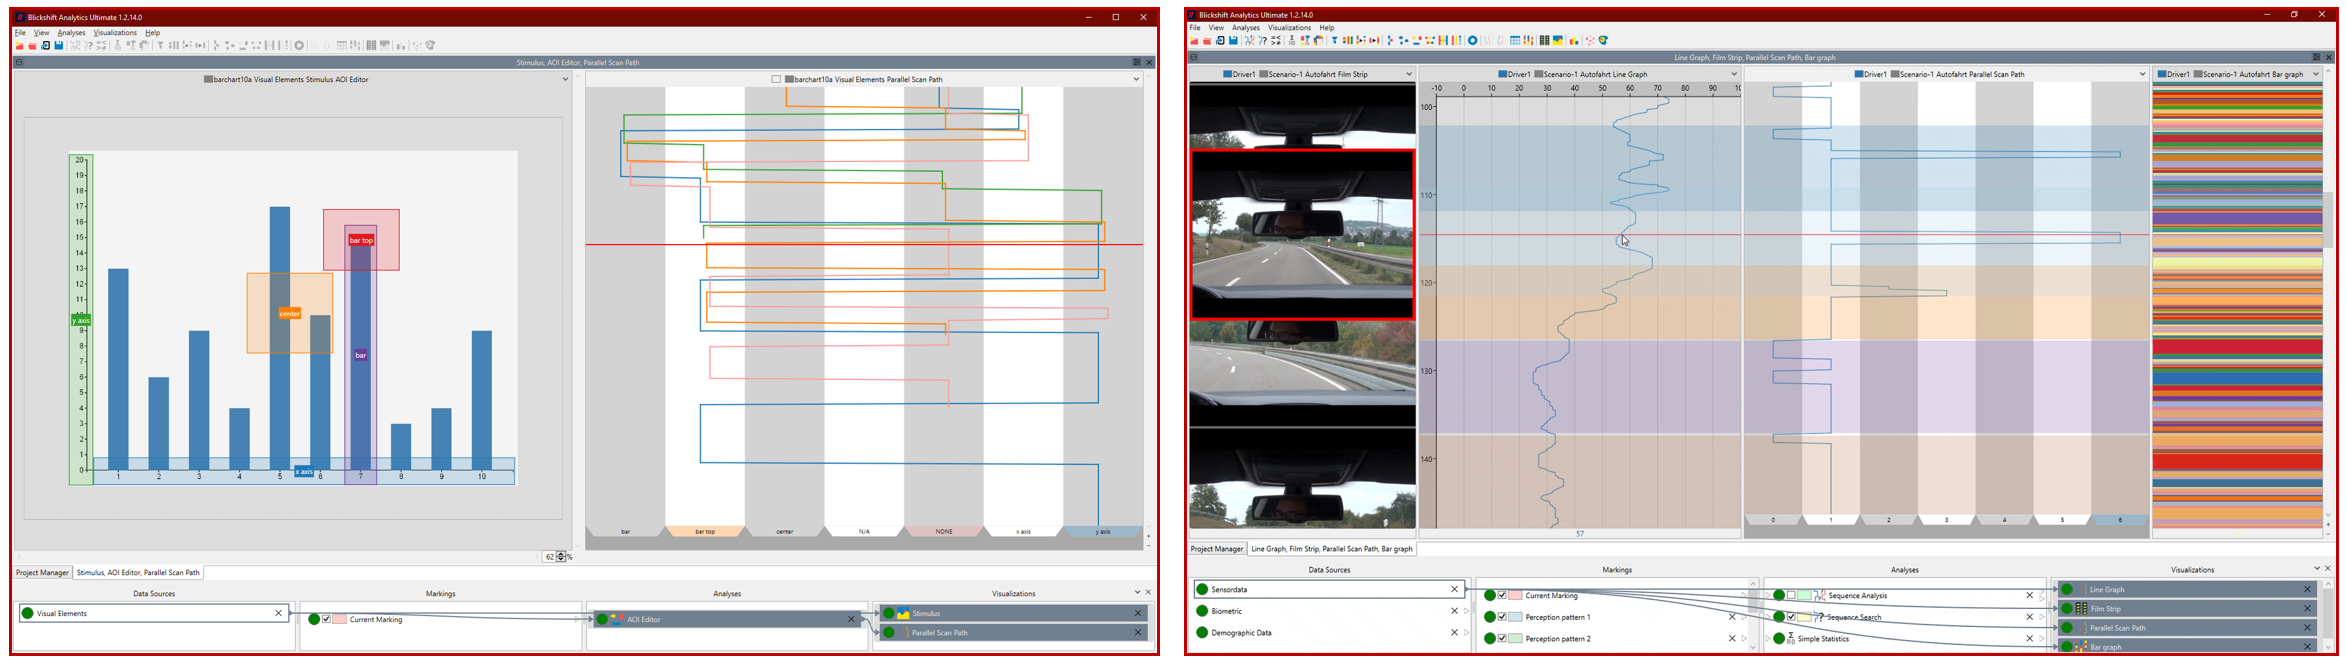 Blickshift Analytics für desktopbasierte Eyetracking-Experimente und statische Aufbauten in Experimenten im Automotive-Umfeldfür desktopbasierte Eyetracking-Experimente und statische Aufbauten in Experimenten im Automotive-Umfeld